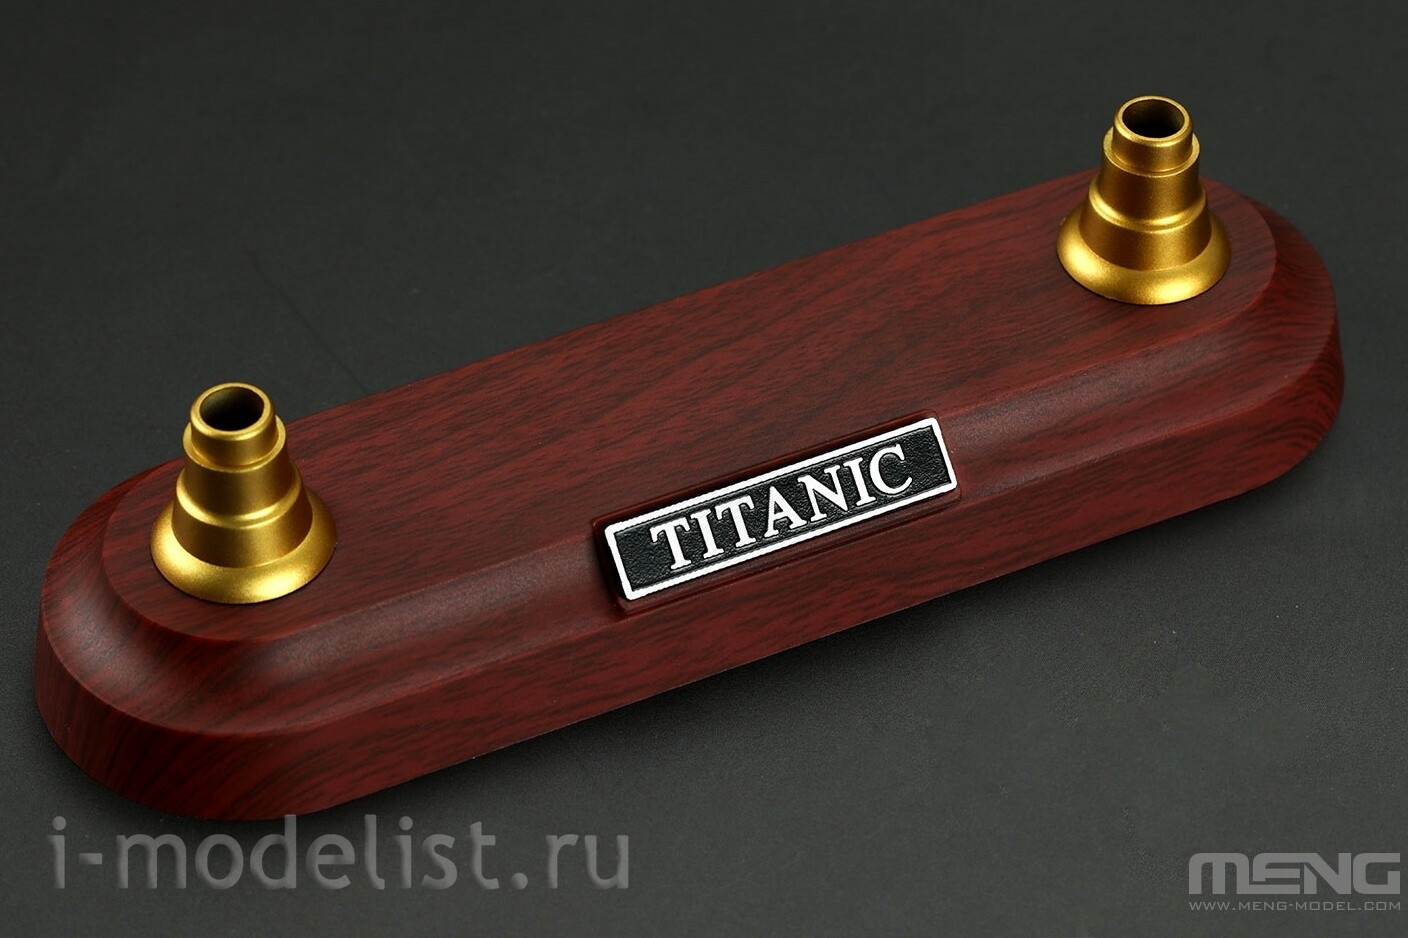 PS-008 Meng 1/700 R.M.S. Titanic